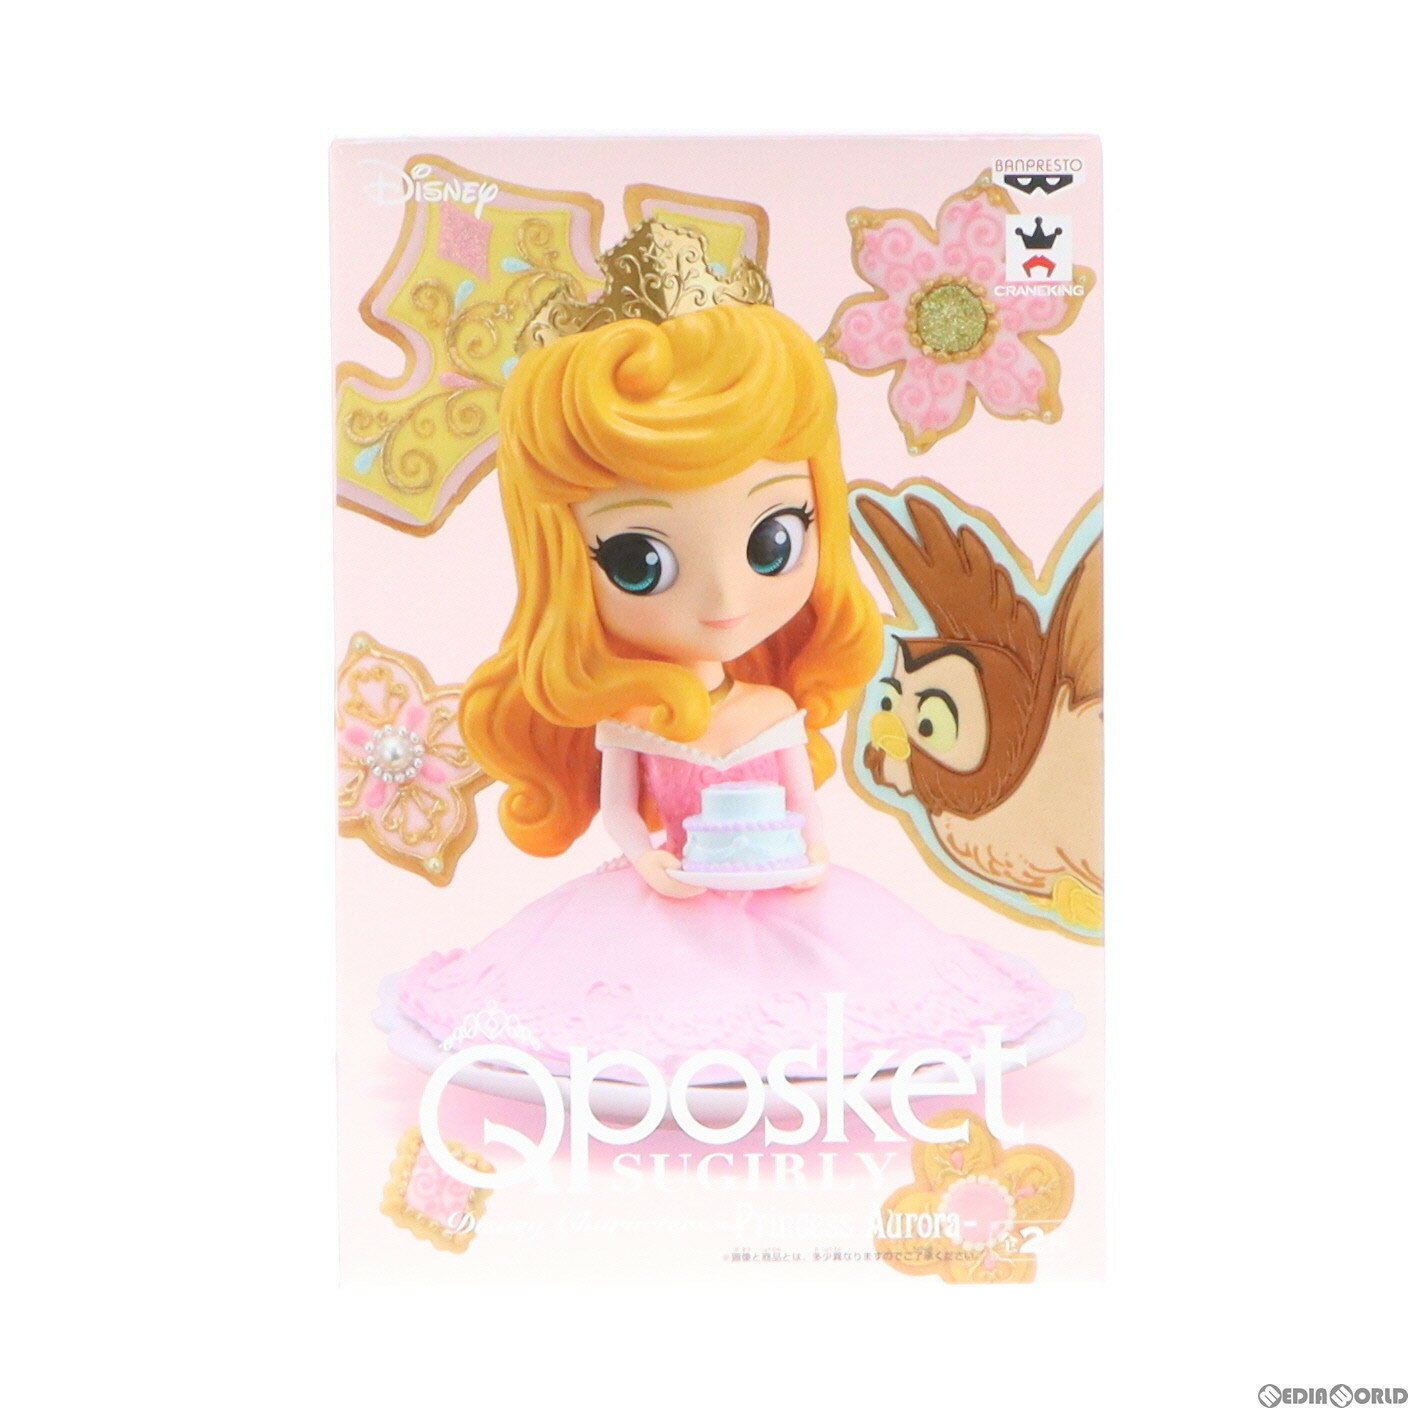 【中古】 FIG オーロラ姫(B パステルカラーver) 眠れる森の美女 Q posket Disney Characters -Princess Aurora- フィギュア プライズ(39353) バンプレスト(20190531)